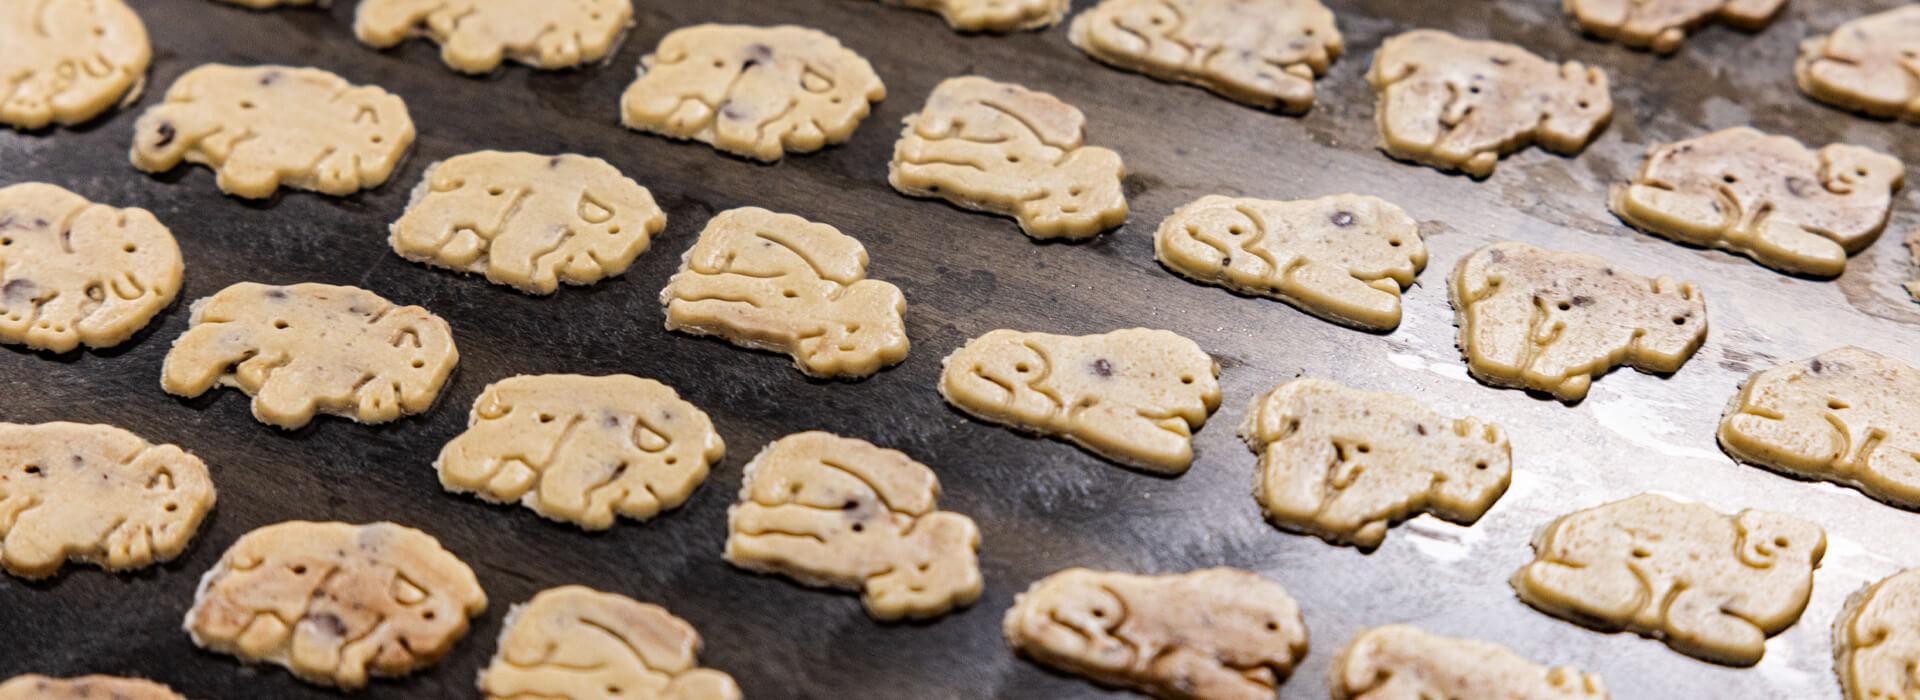 baking animal cookies